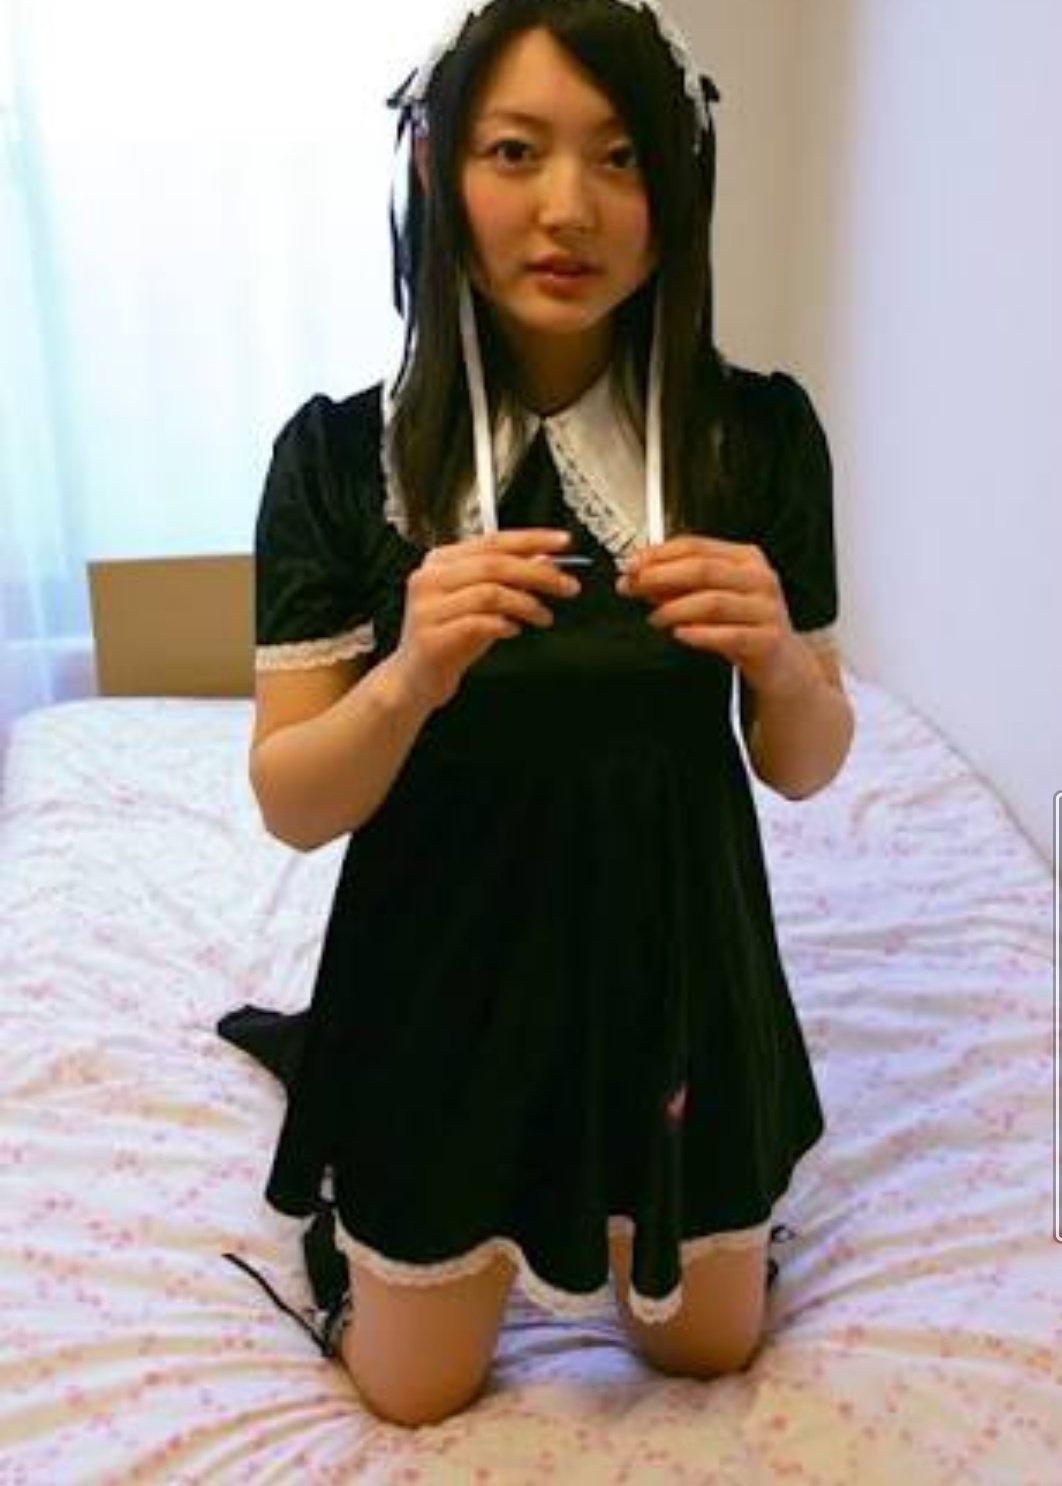 画像 ジュニアアイドル時代の花澤香菜さんが可愛すぎる件wwwwwwwwwwwwwwwwwww 阪神タイガース猛虎魂アンテナ